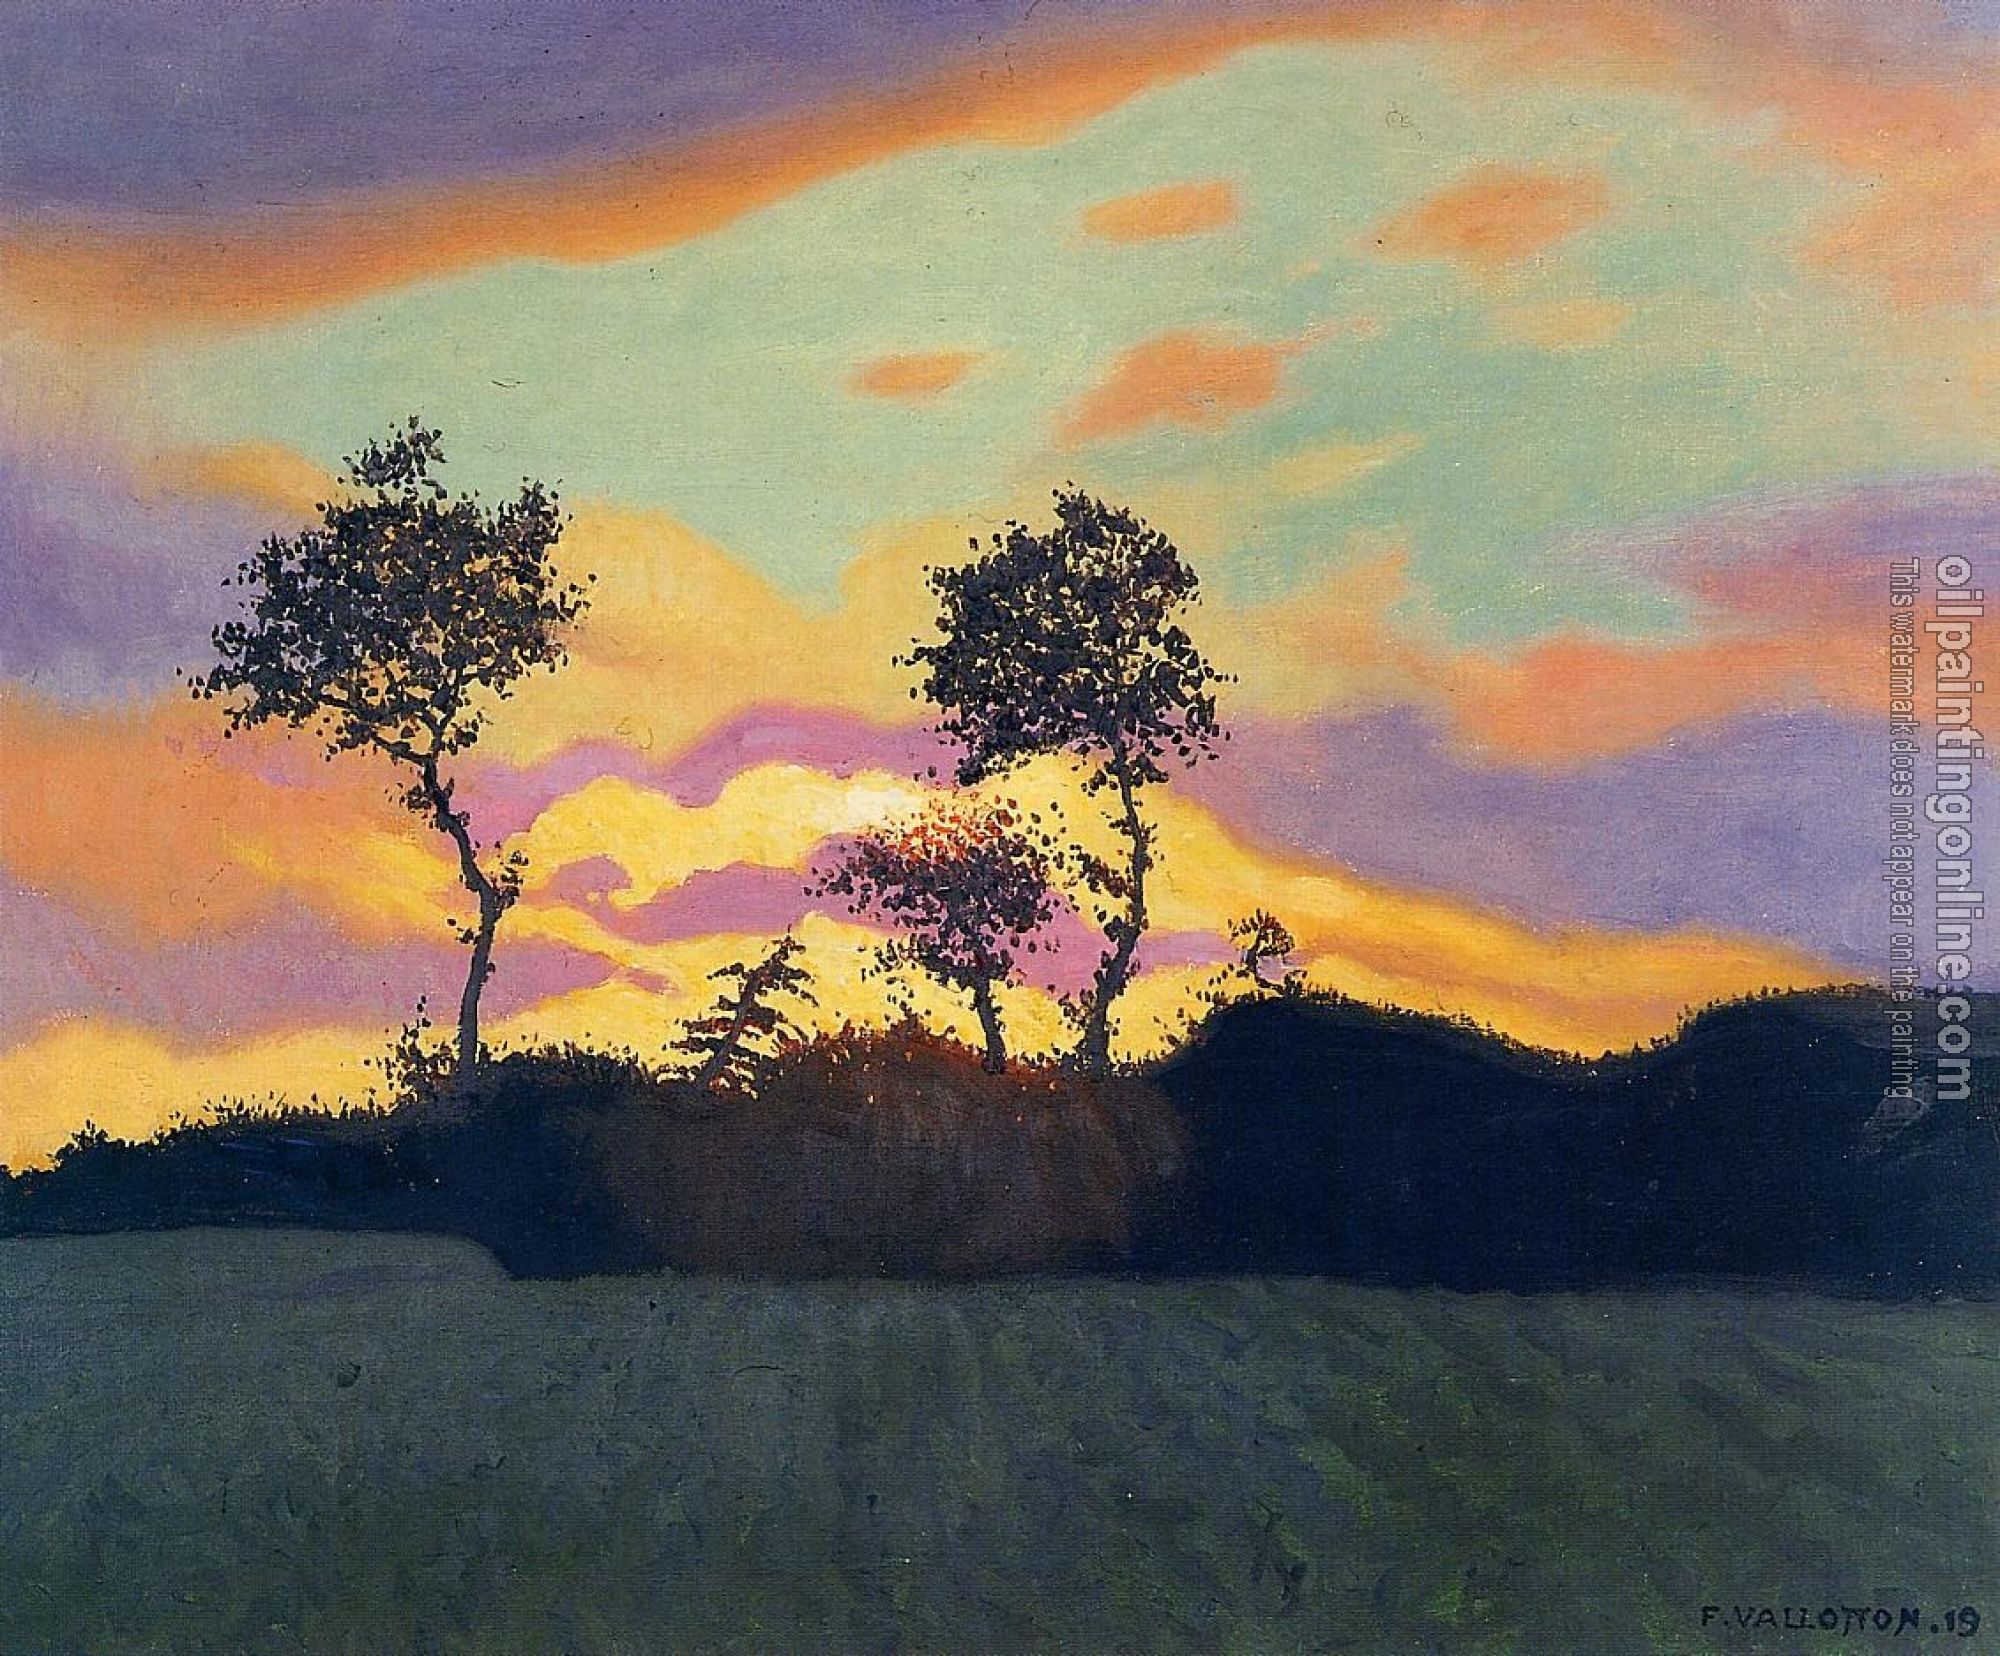 Felix Vallotton - Landscape at Sunset